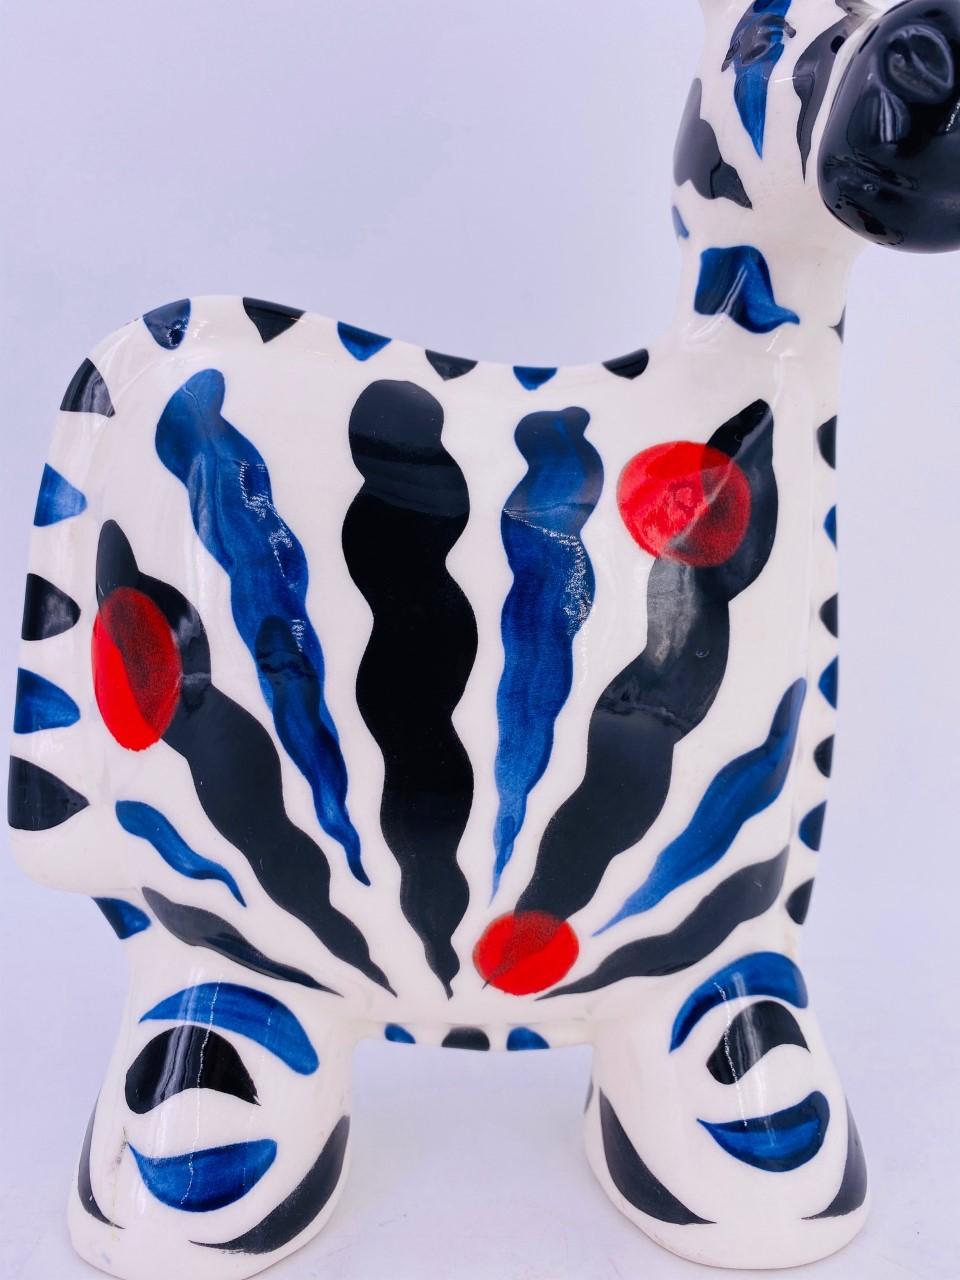 Hand-Crafted Turov Arts Ceramic Zebra Figure